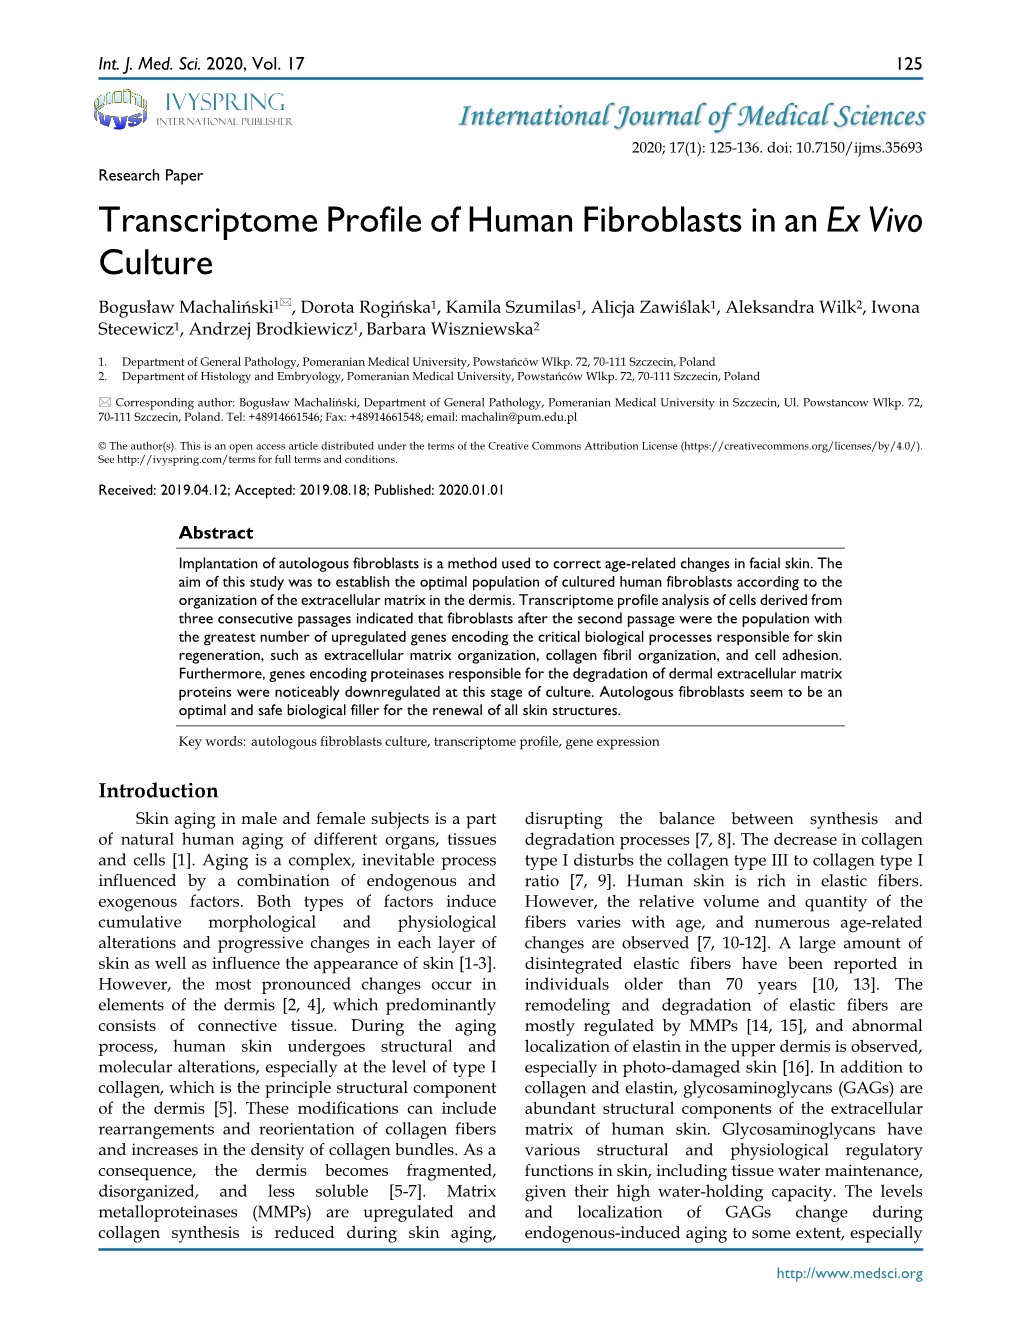 Transcriptome Profile of Human Fibroblasts in an Ex Vivo Culture